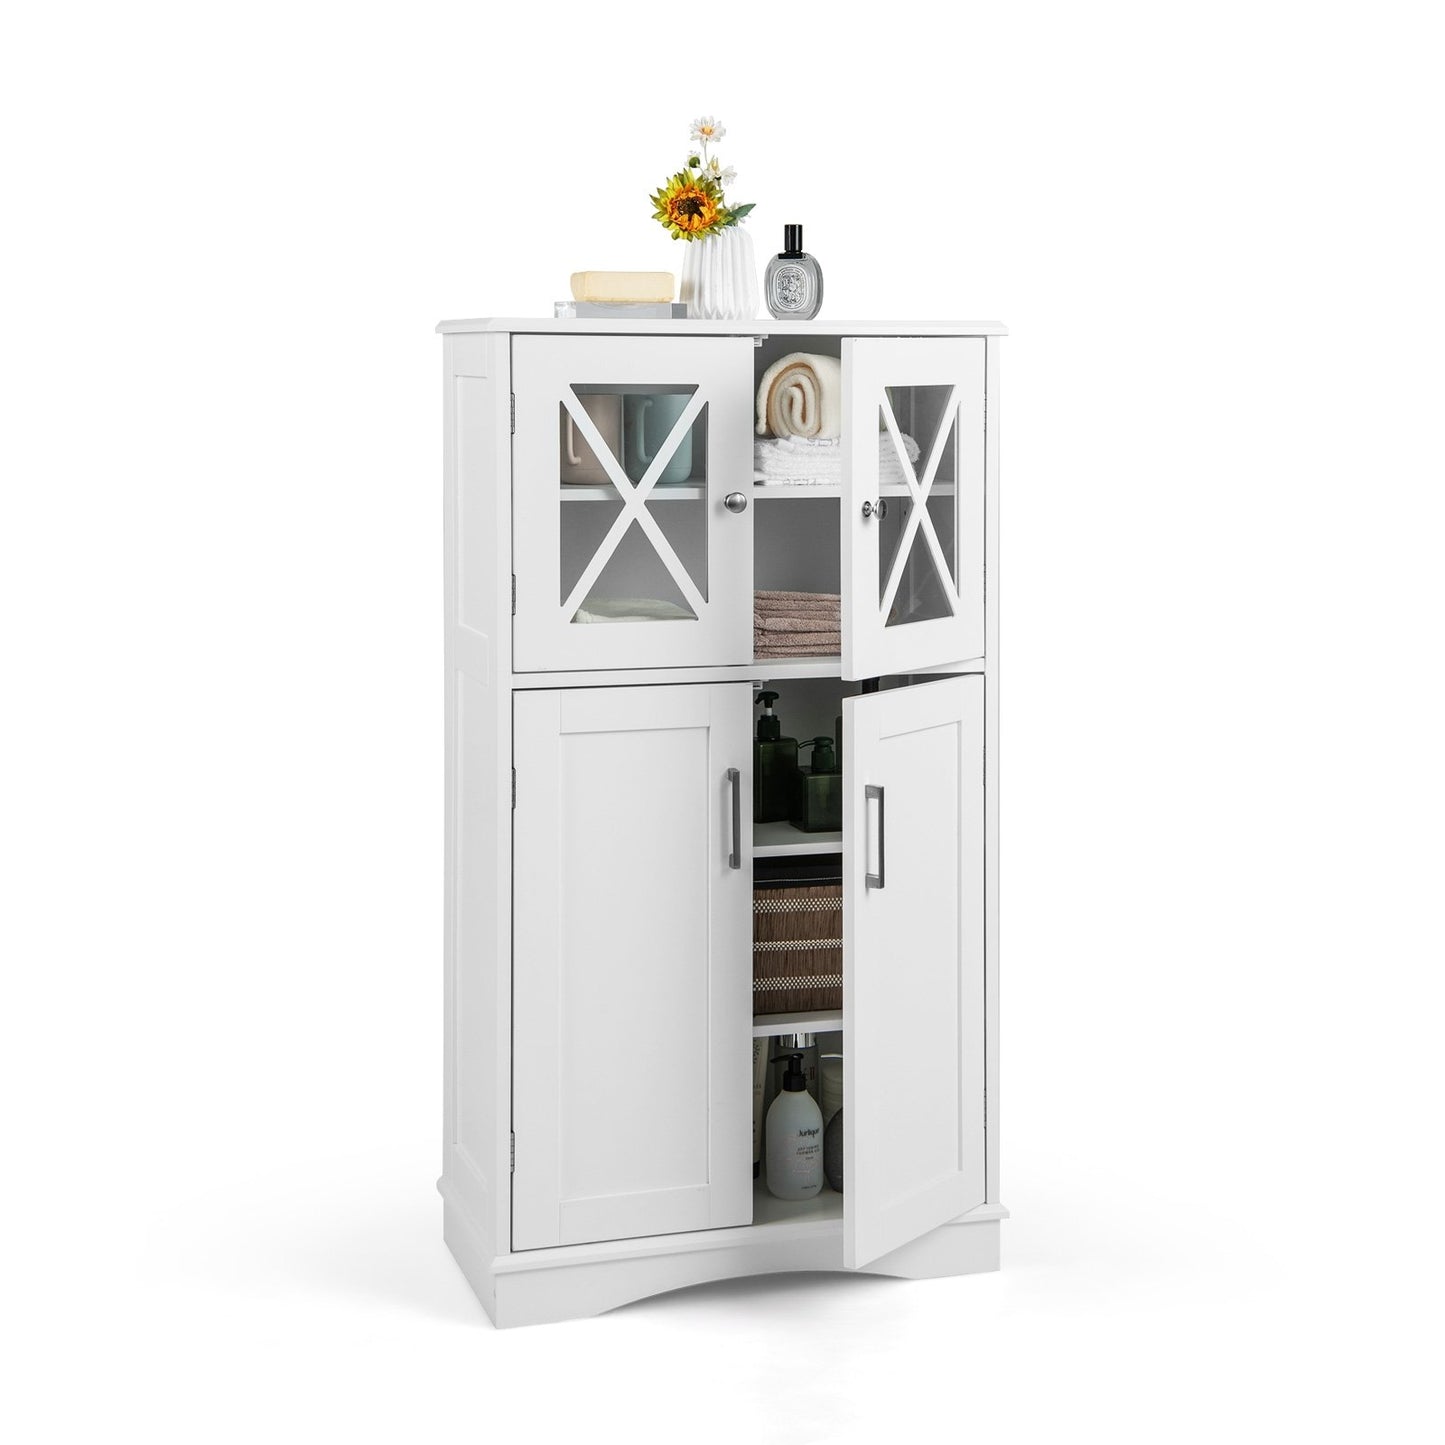 4 Doors Freeestanding Bathroom Floor Cabinet with Adjustable Shelves, White